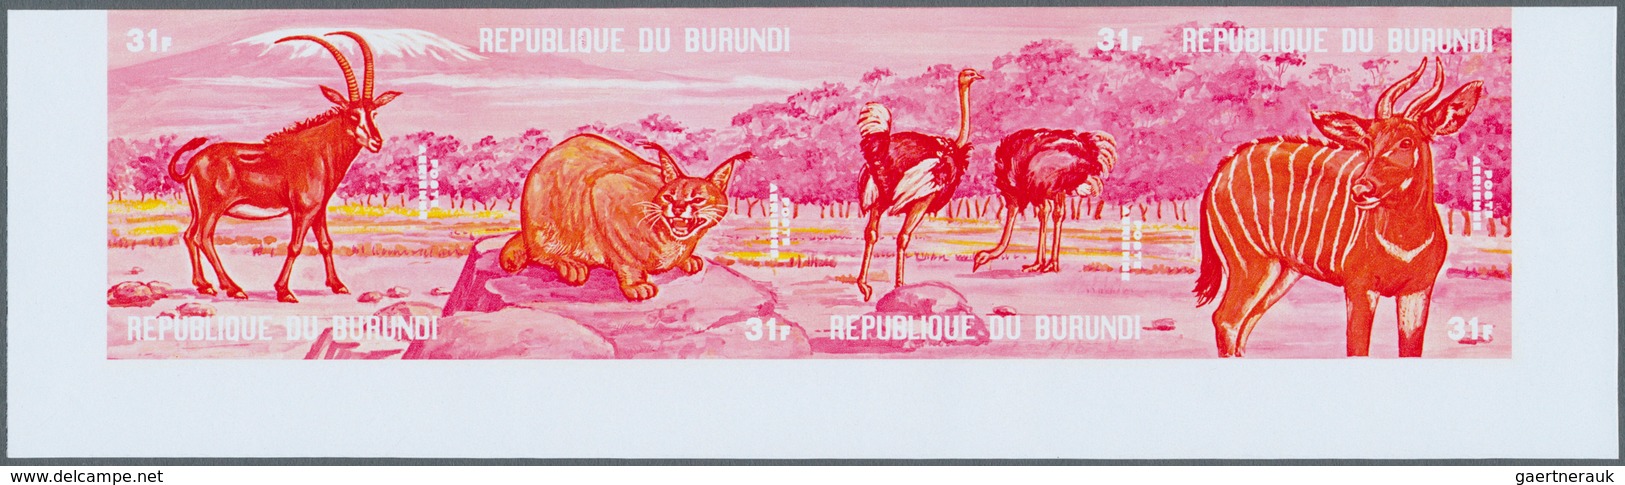 Thematik: Tiere- exotische Tiere / animals-exotic animals: 1971, African Animals - 6 items; Burundi,